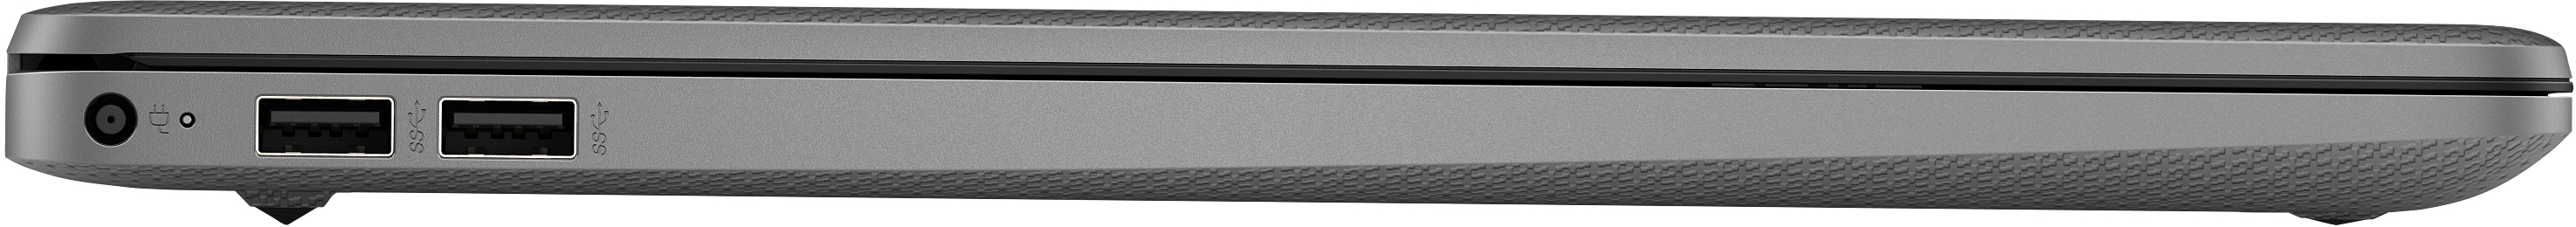 Notebook HP 15s-eq2060nl 5500U Computer portatile 39,6 cm (15.6